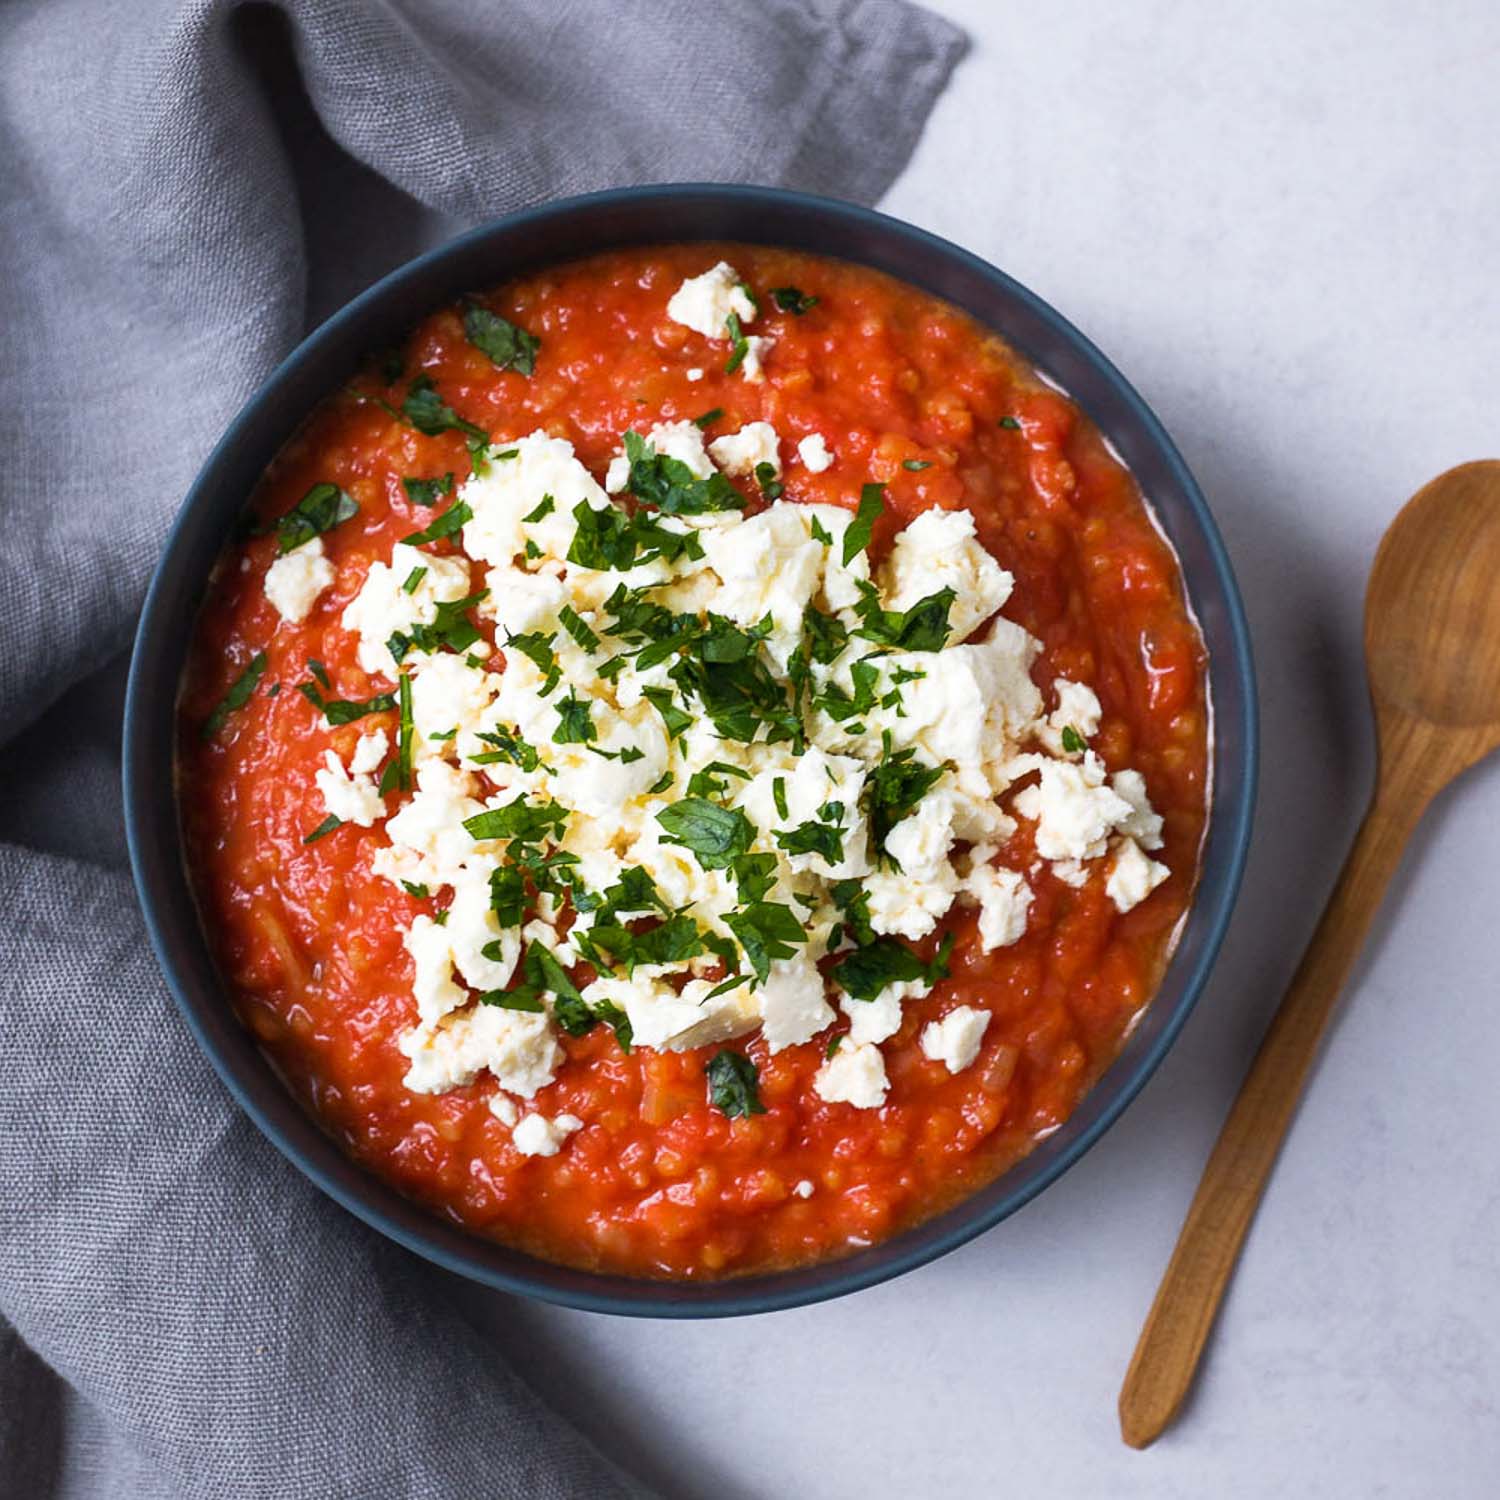 Lecker kann ganz einfach sein. Probiert mal diese leckere Tomaten-Feta-Hirse Suppe mit Petersilie. Simpel in der Zubereitung aber köstlich im Geschmack.